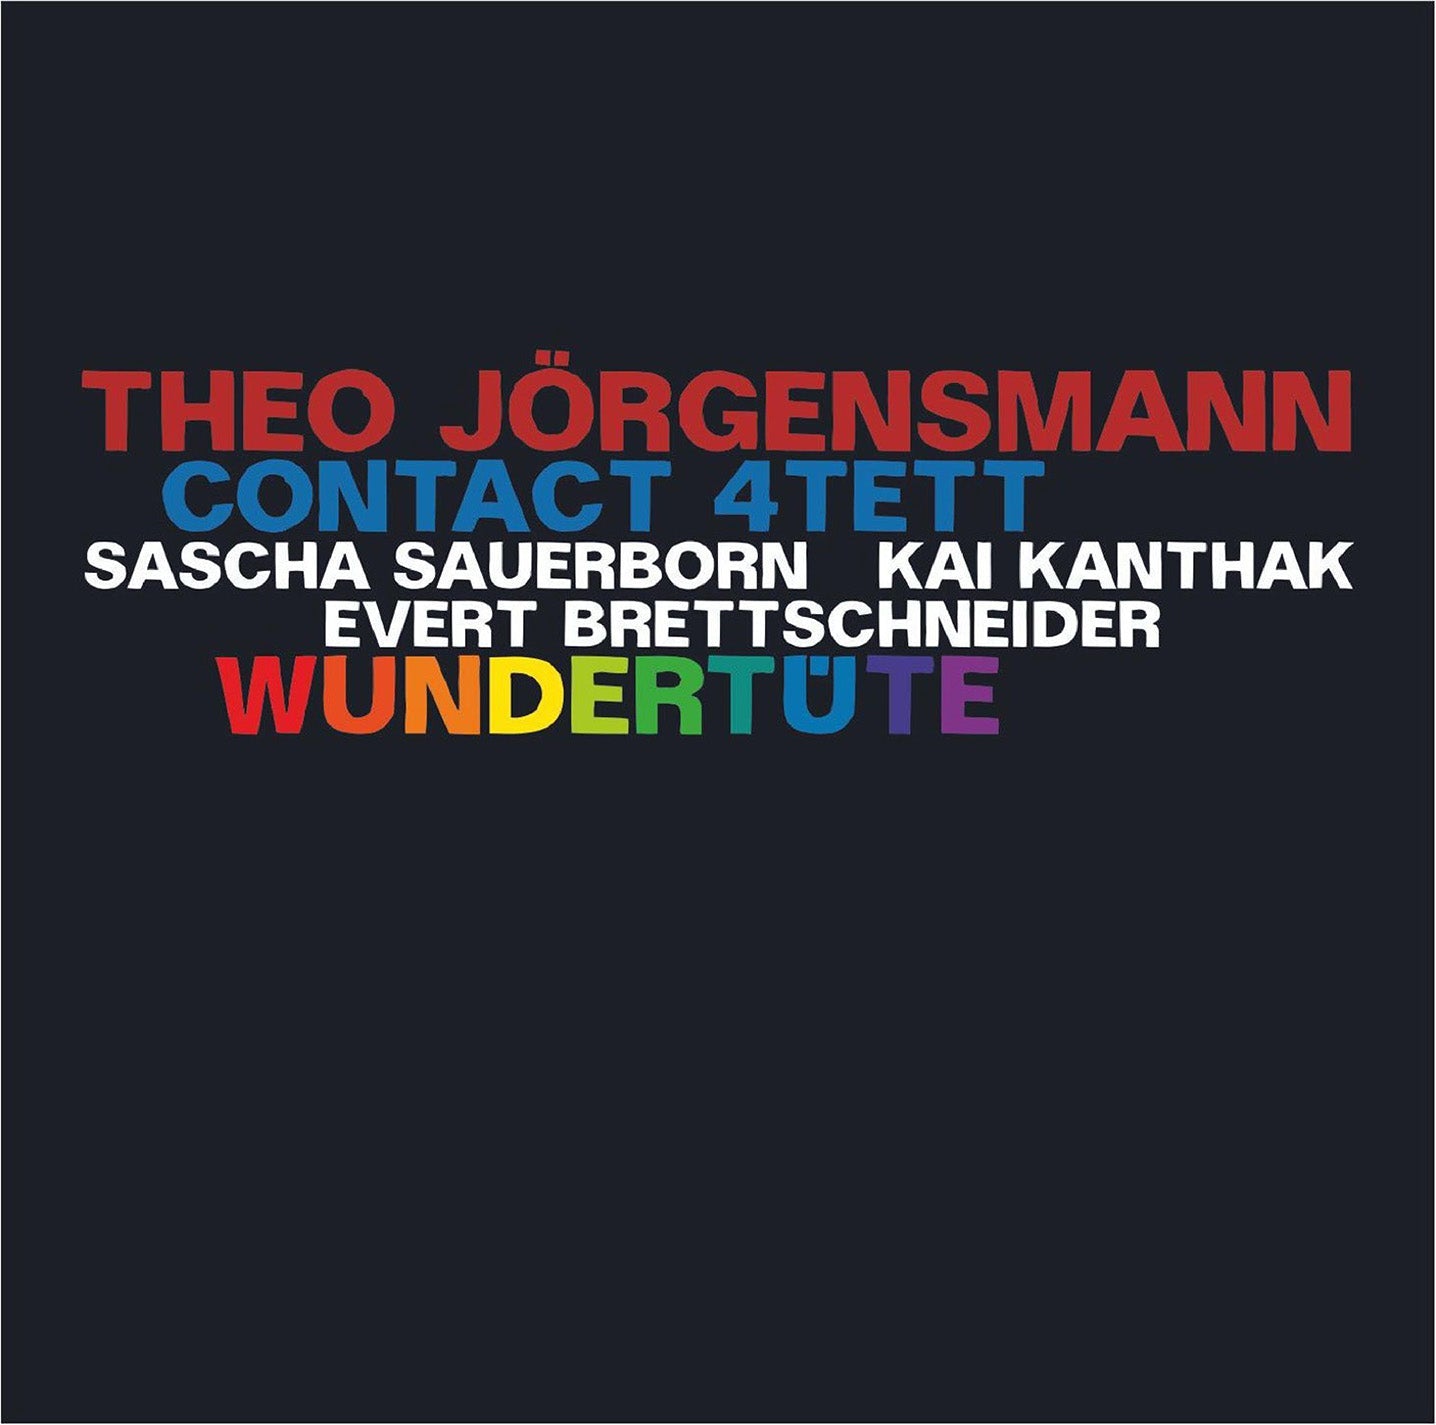 Brettschneider, Jorgensmann, Kanthak & Sauerborn: Wundertute